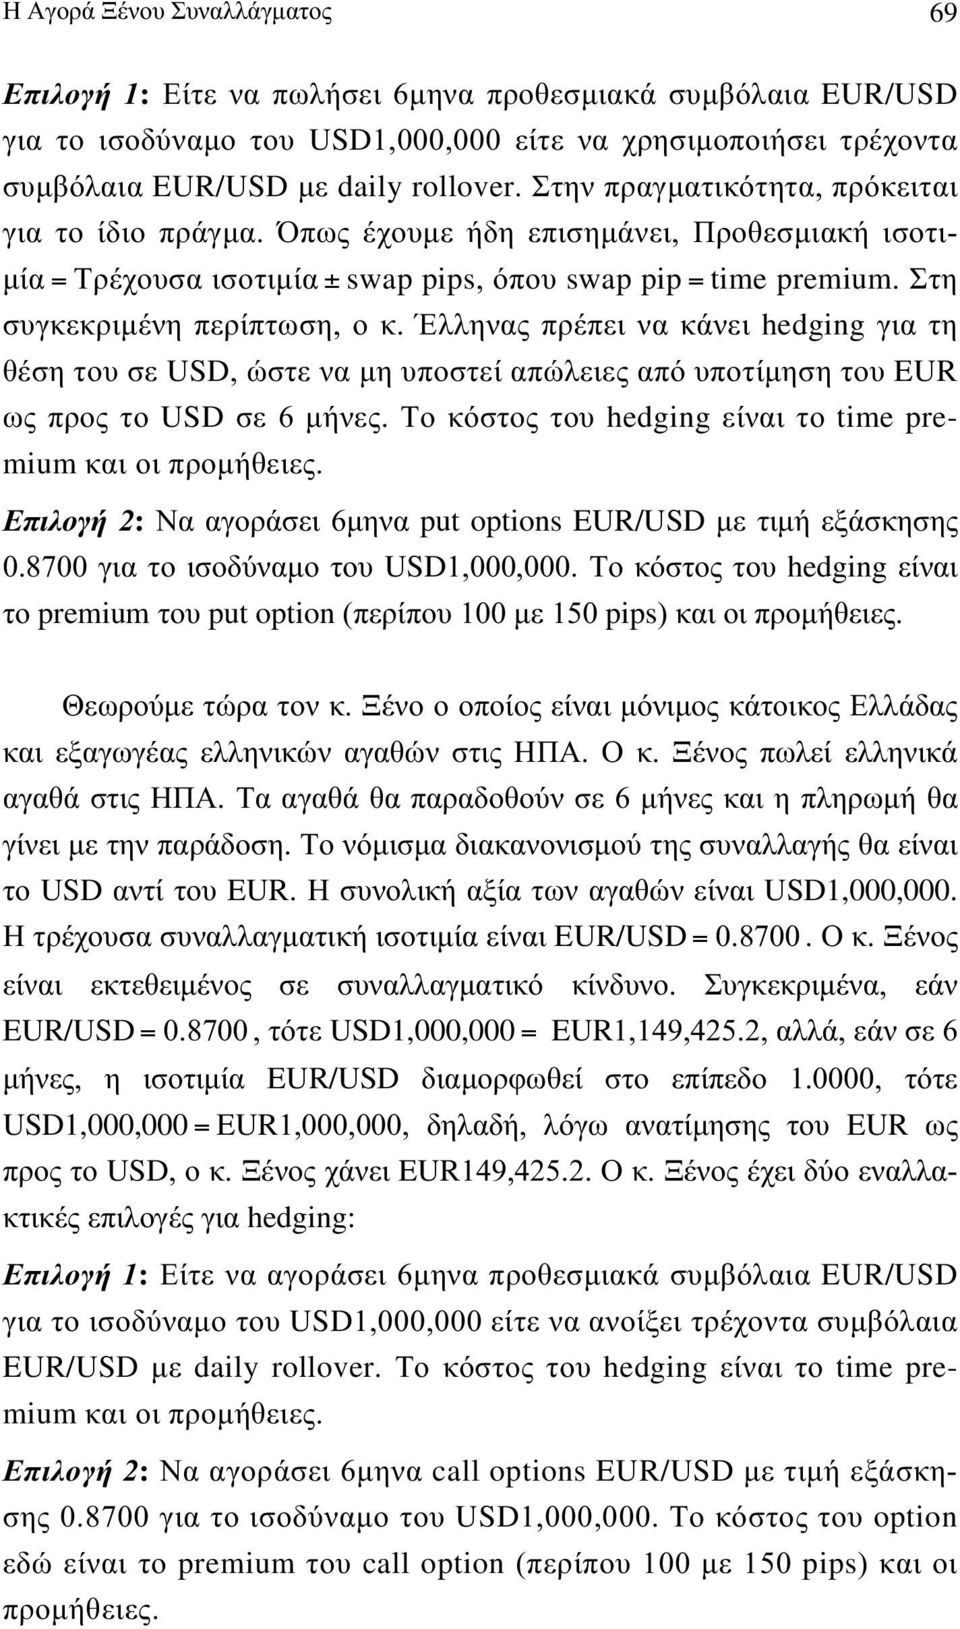 Έλληνας ρέει να κάνει hgng για τη θέη του ε UD, ώτε να µη υοτεί αώλειες αό υοτίµηη του UR ως ρος το UD ε 6 µήνες. ο κότος του hgng είναι το tm pmum και οι ροµήθειες.